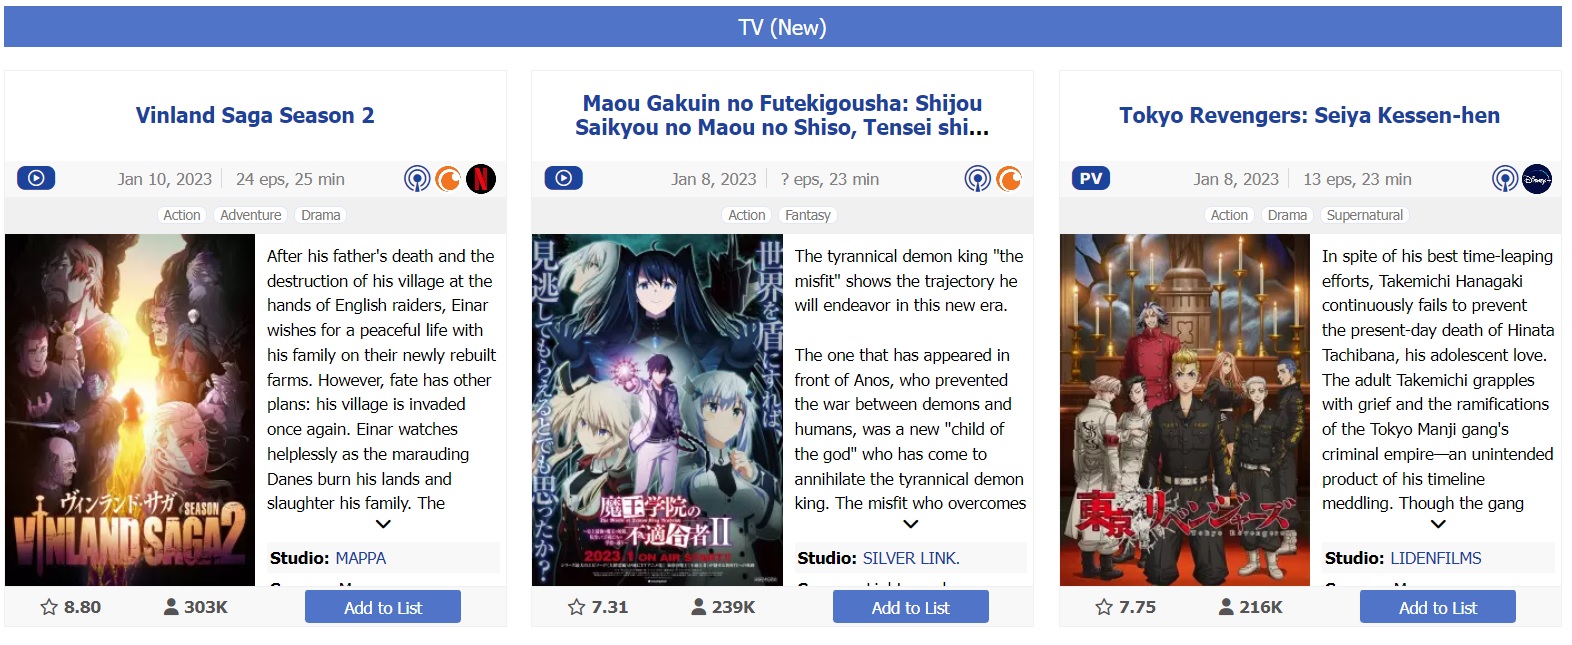 Ranking de los mejores anime de la temporada Enero-Marzo 2023. En el primer lugar está Vinland Saga con más de 300 mil miembros, según Myanimelist